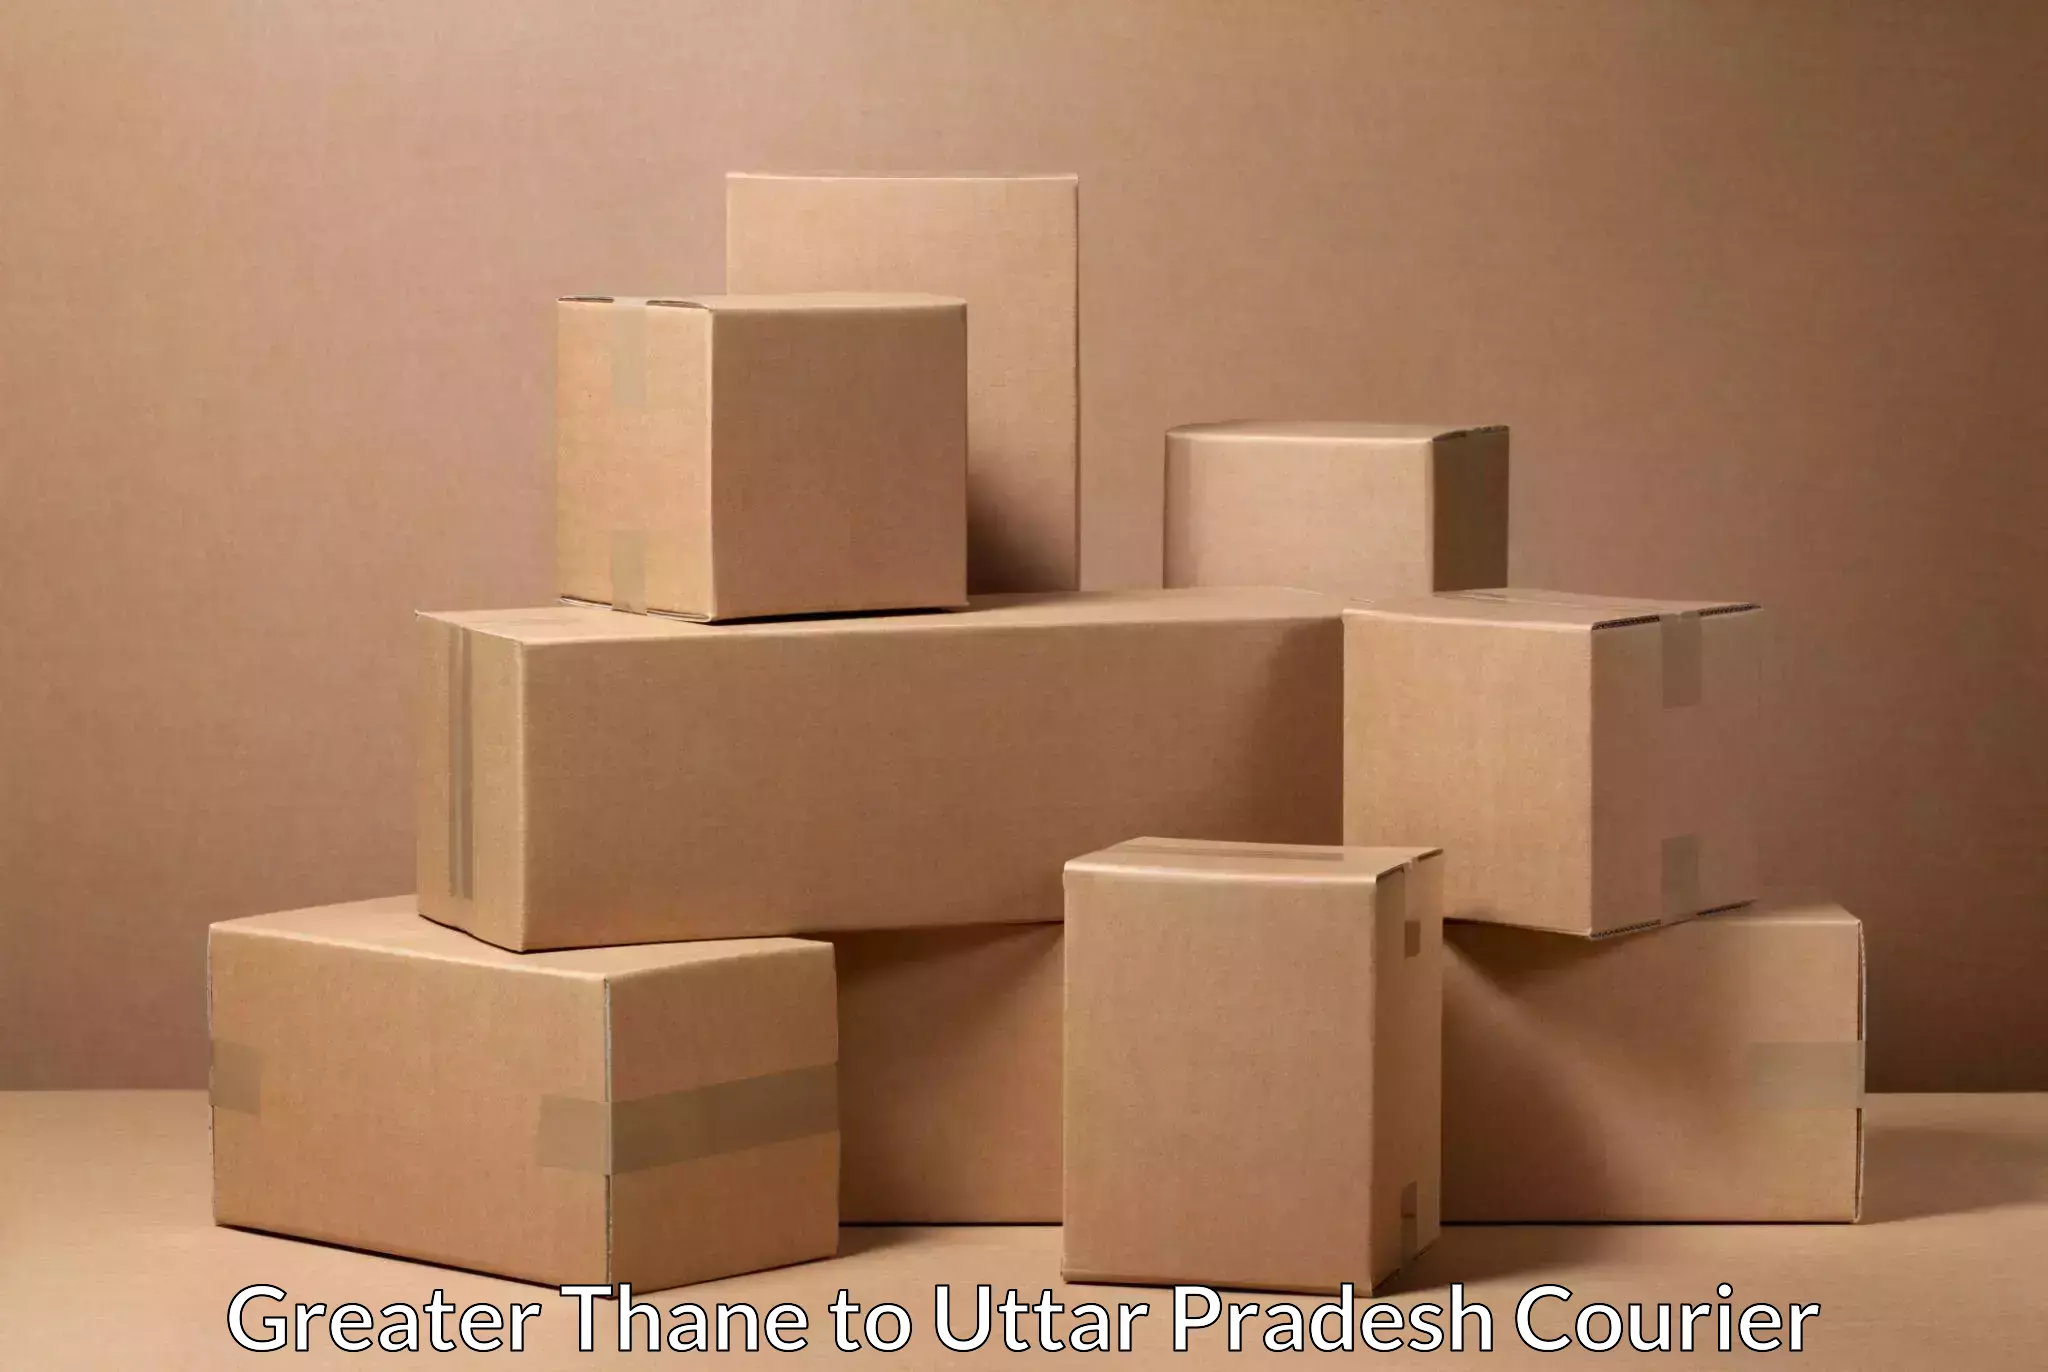 Package forwarding in Greater Thane to Uttar Pradesh